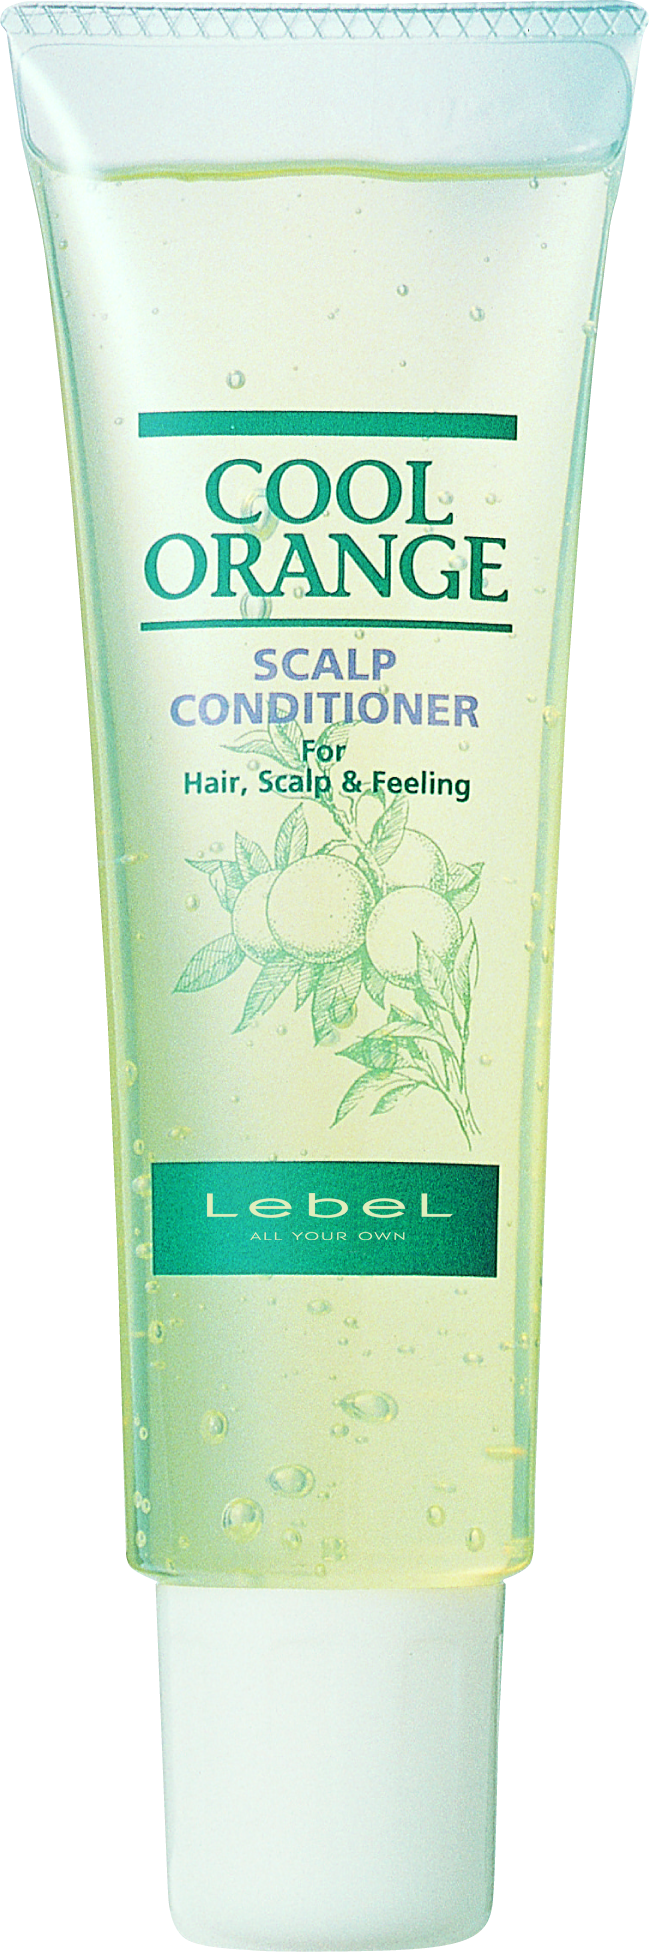 Кондиционер очиститель COOL ORANGE scalp conditioner Туба 130 гр (Товар)